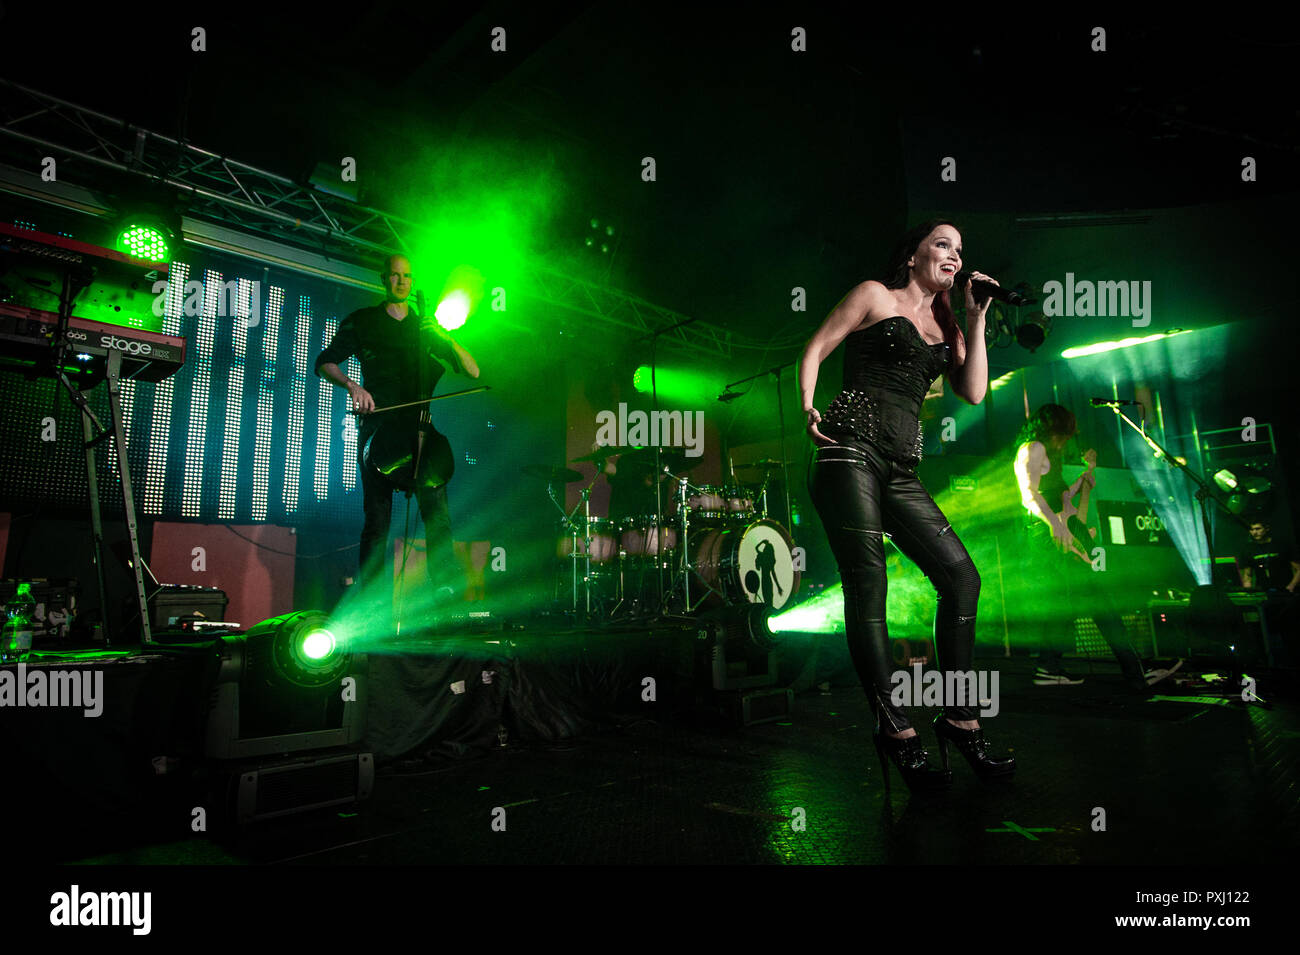 Finnische Sänger und Songwriter, Tarja Turunen live auf der Bühne bei Orion Live Club, Rom, Italien Am 17. Oktober 2018. Foto von Giuseppe Maffia Stockfoto